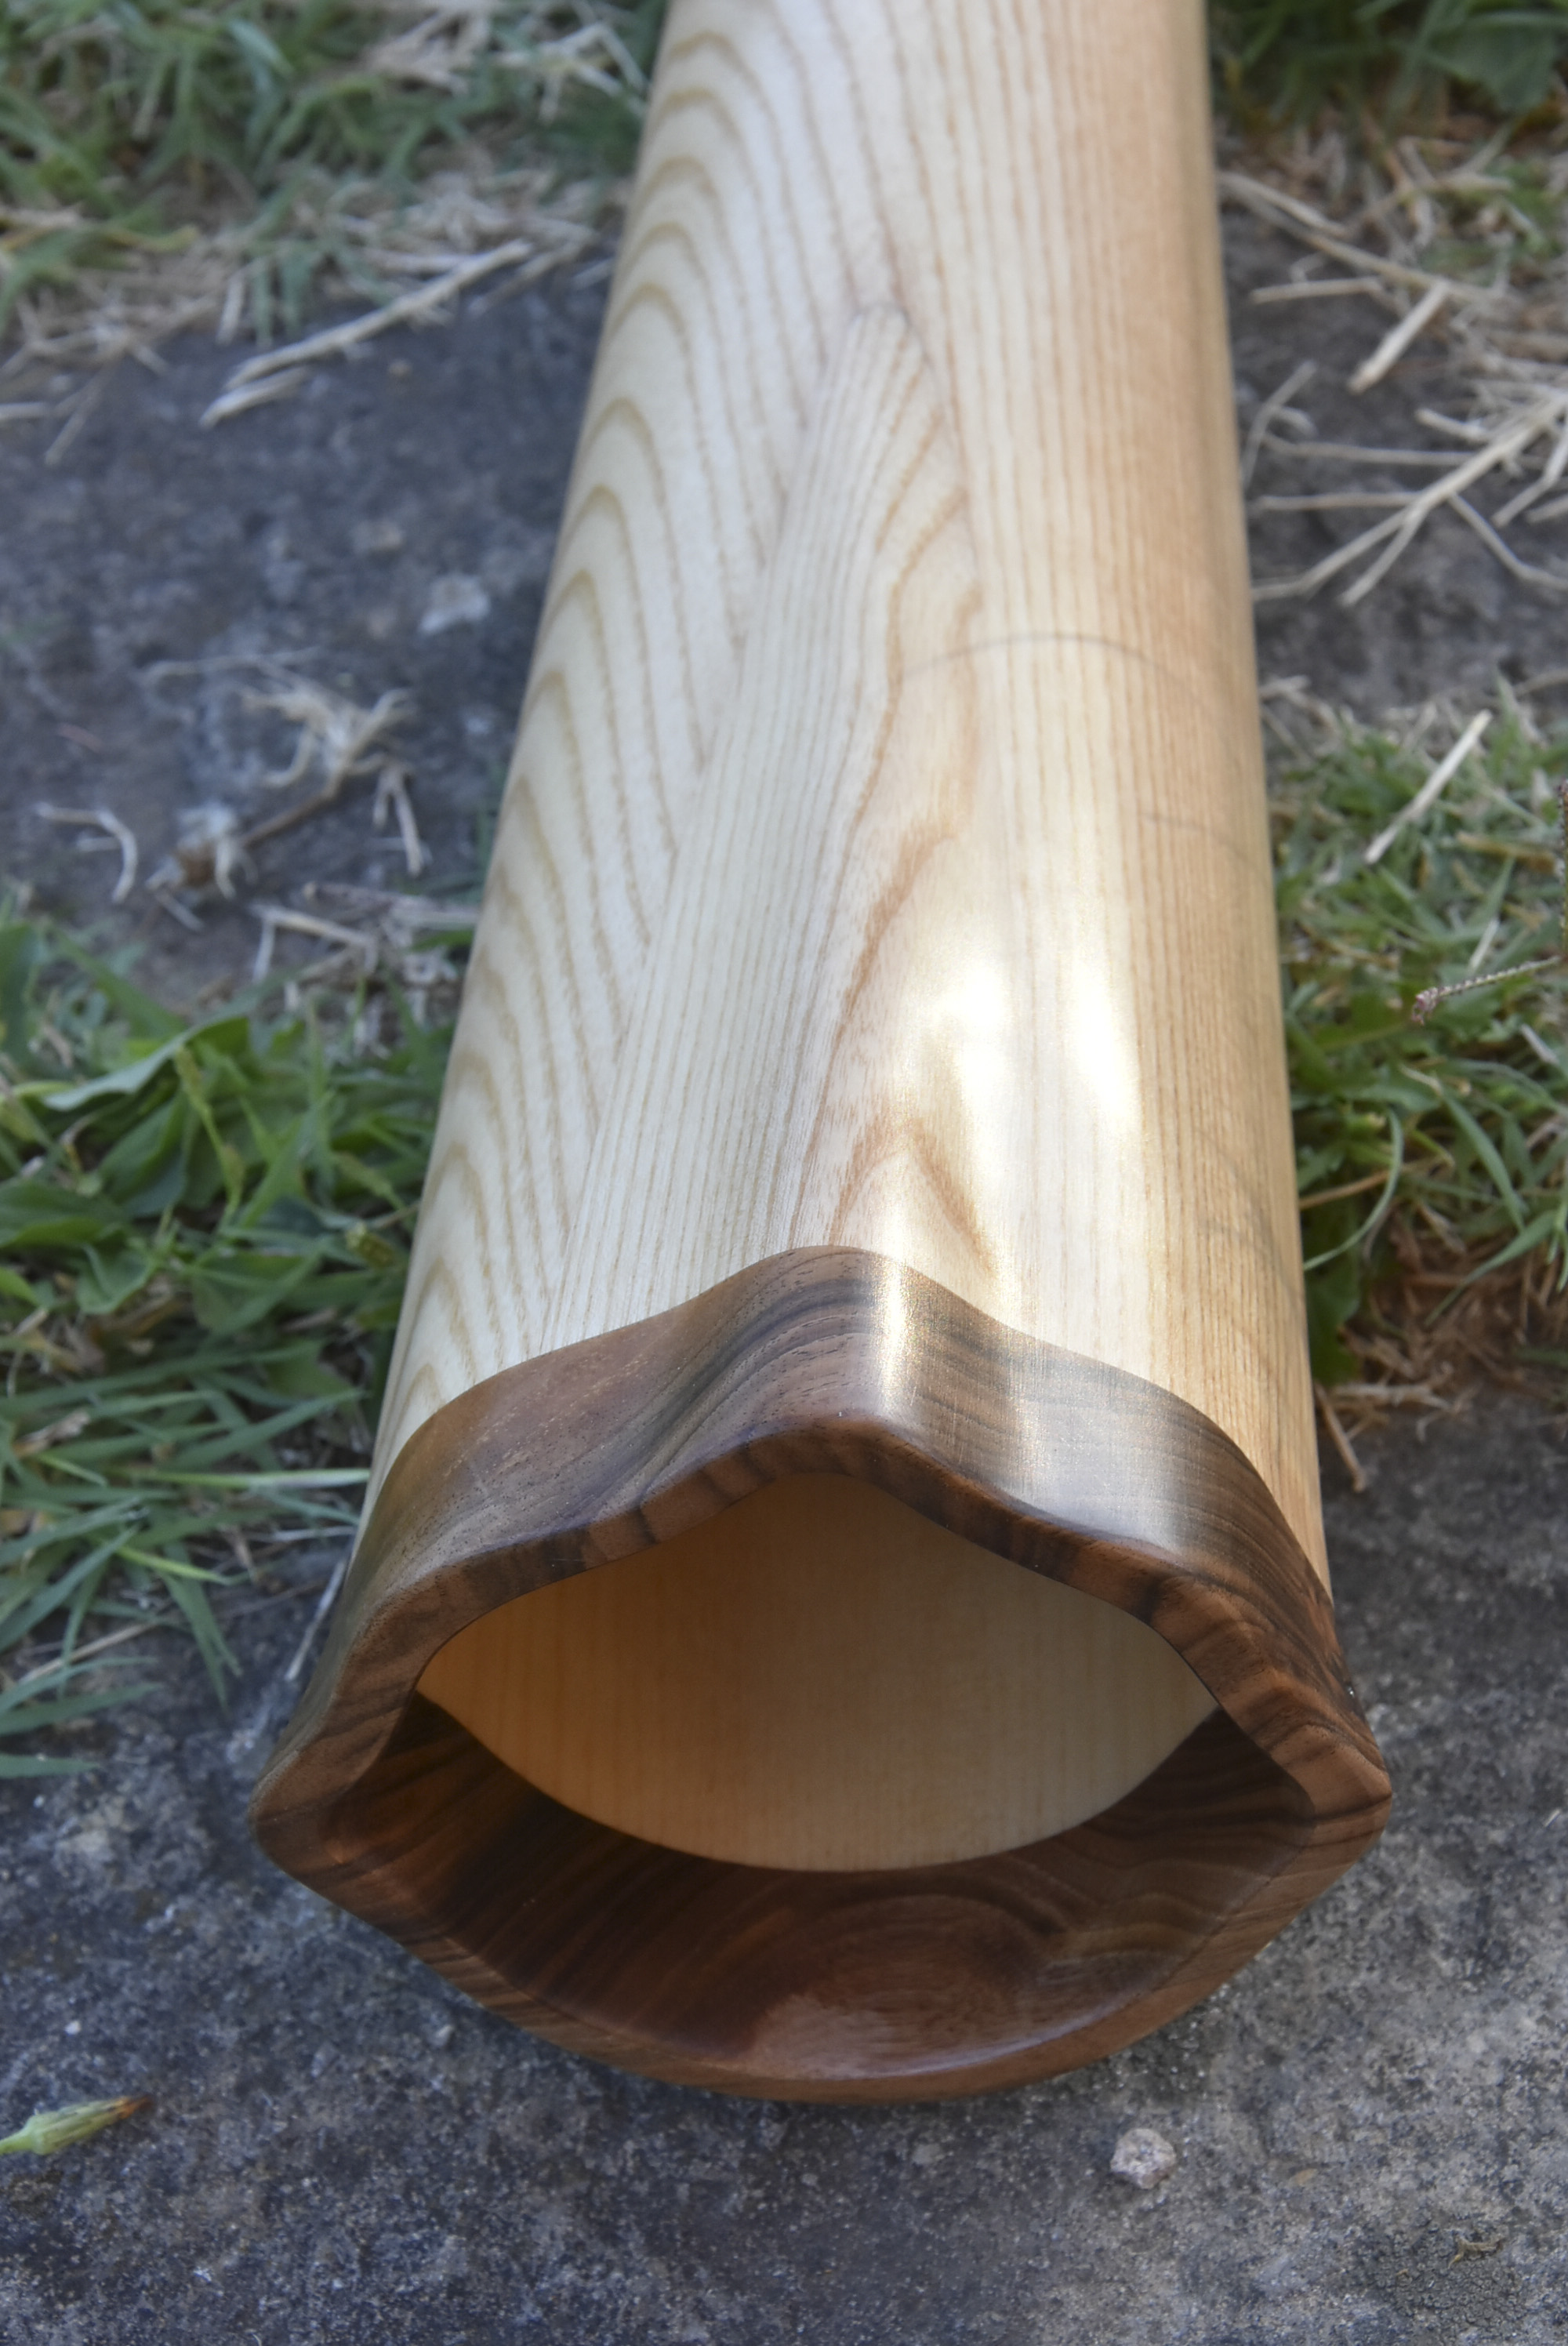 Didgerido sur mesure, en La, tout droit, fabriqué en bois de frêne à coeur d'olivier, avec du noyer à la cloche